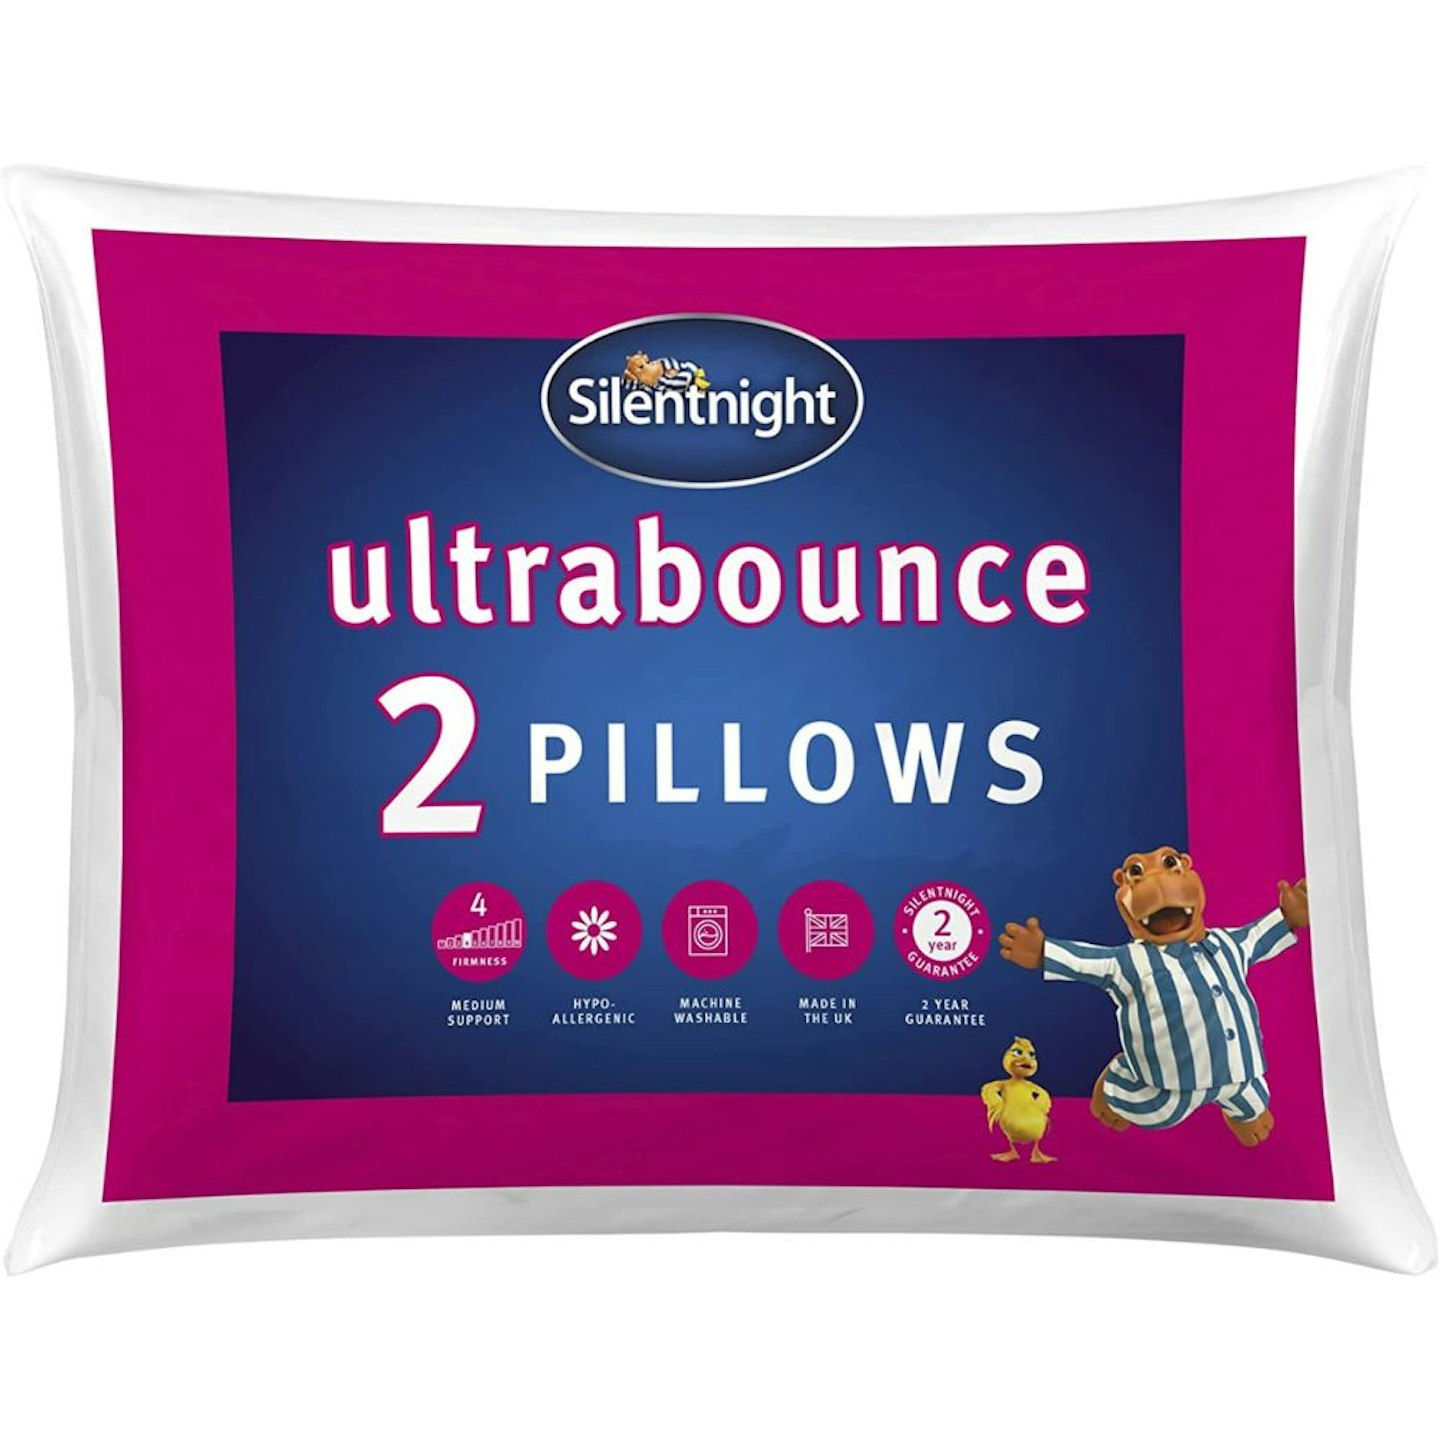 Silentnight Ultrabounce Pack of 2 Pillows